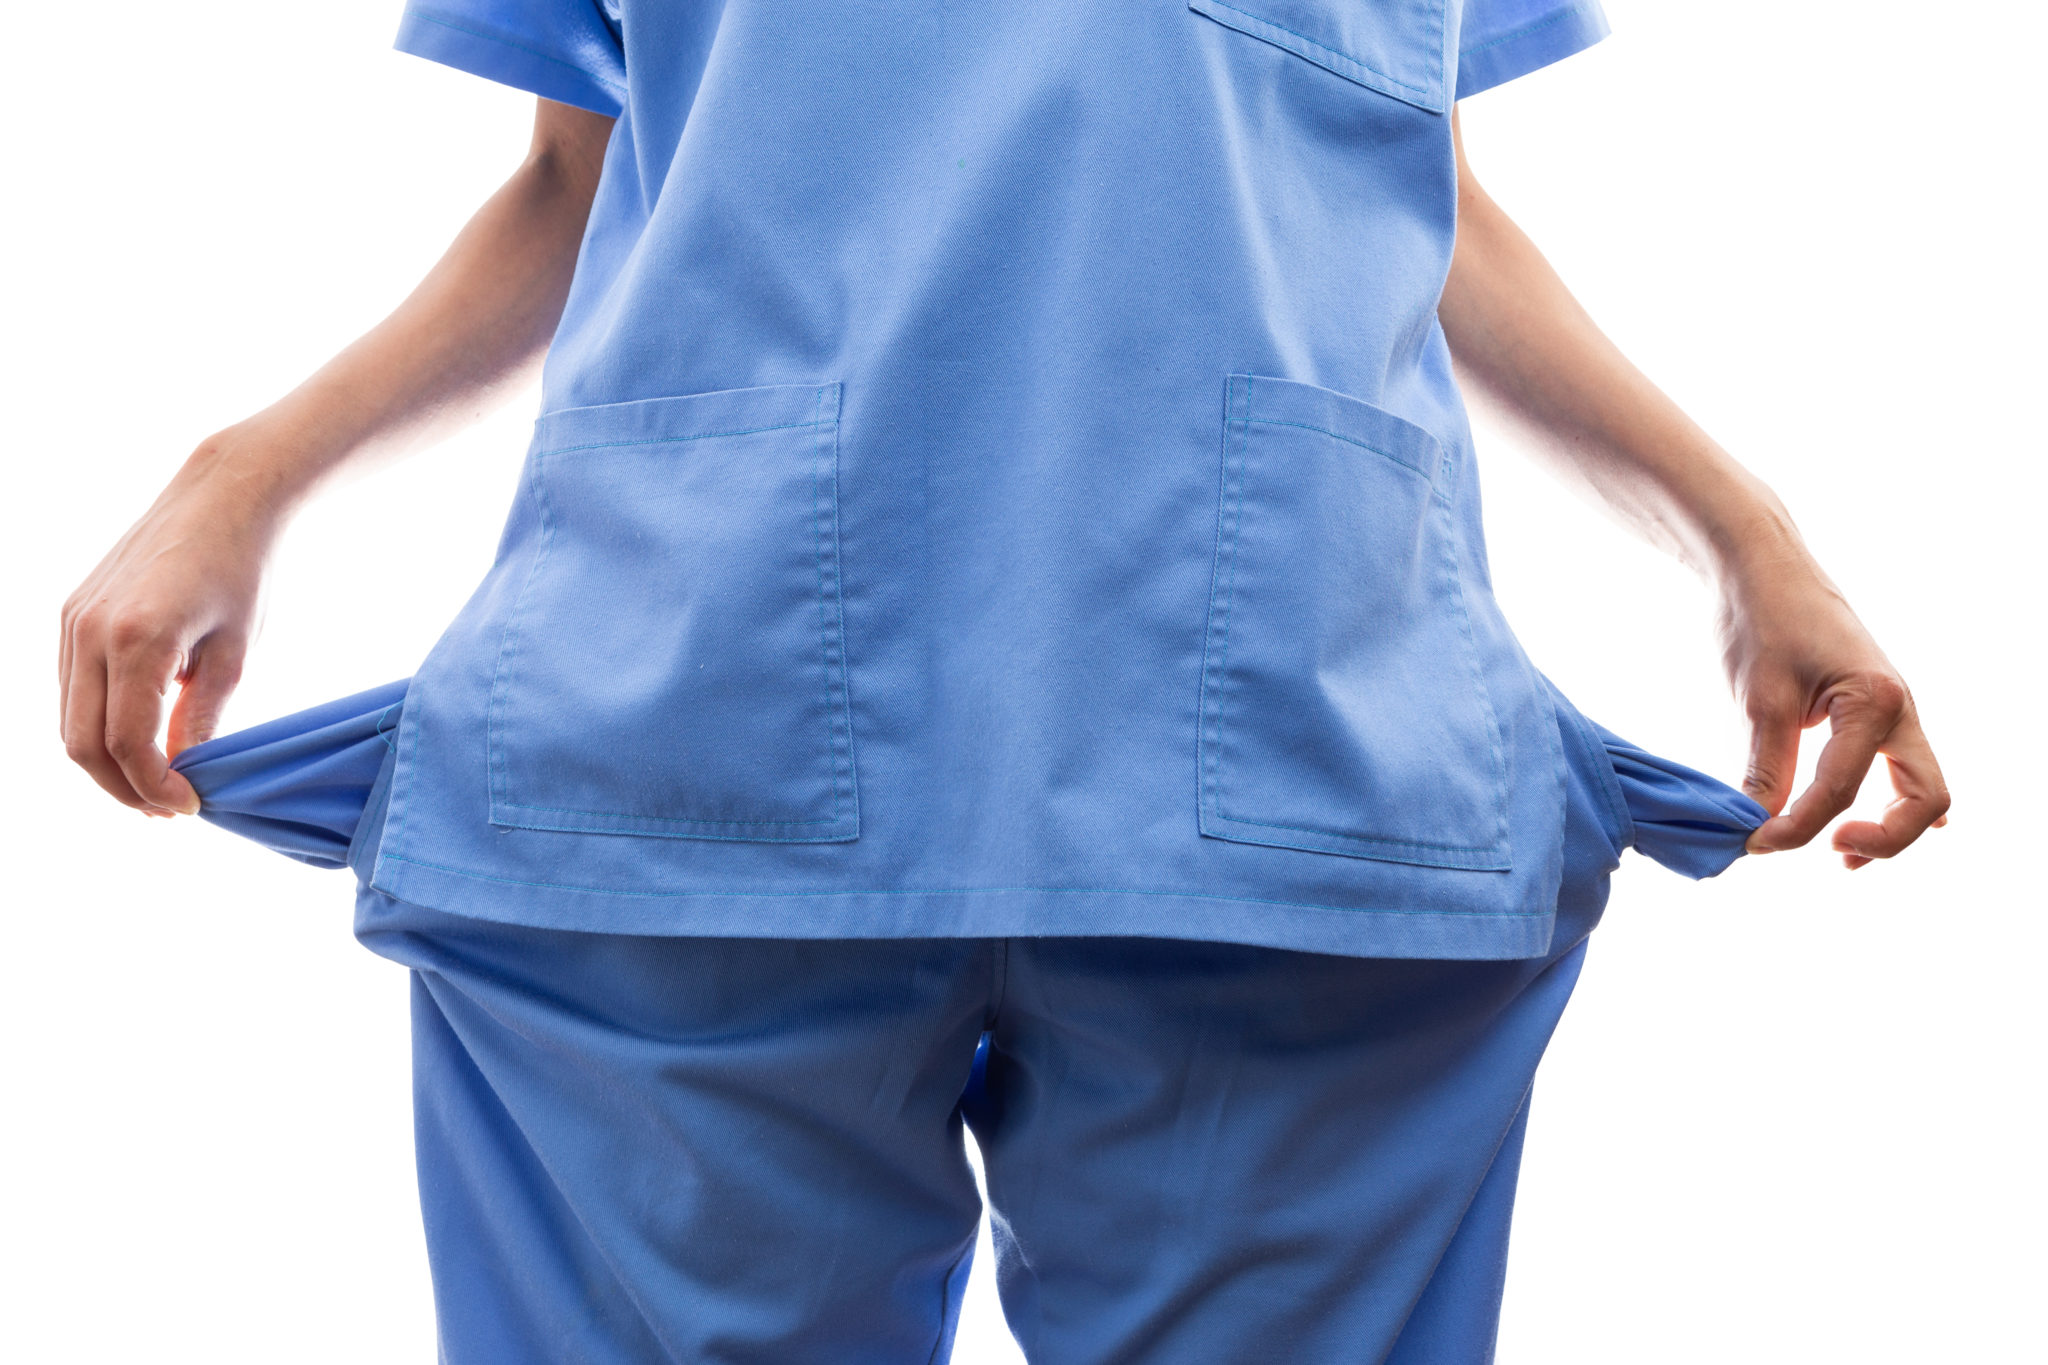 Sairaanhoitajan pieni palkka ei johdu arvostuksen puutteesta tai ilkeästä työnantajasta.